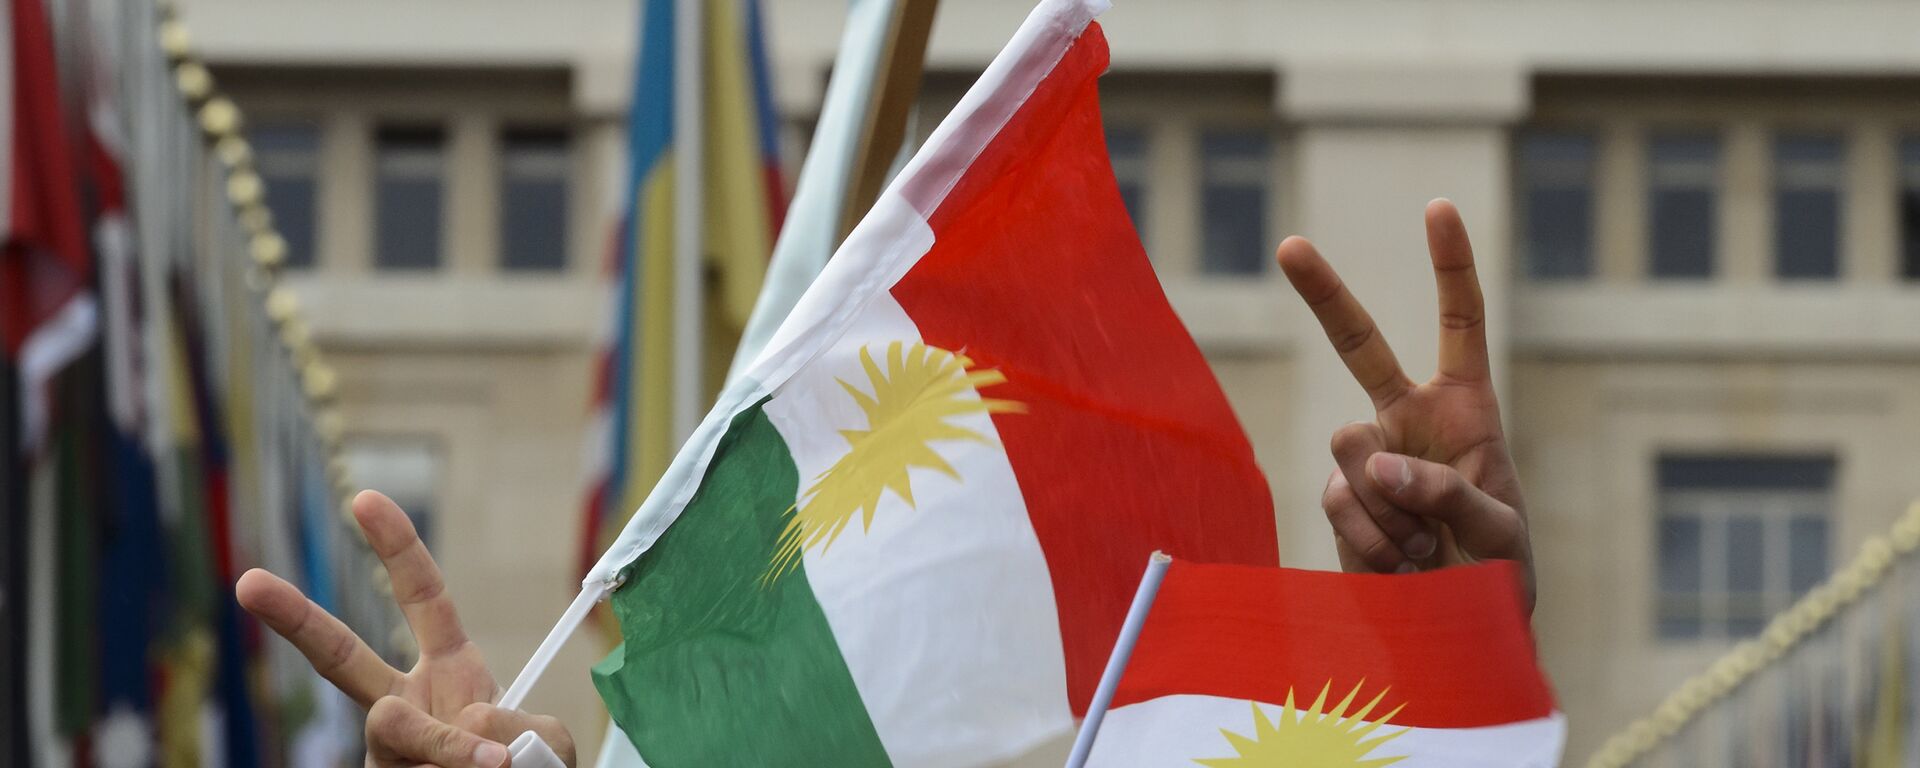 علم كردستان - سبوتنيك عربي, 1920, 25.09.2021